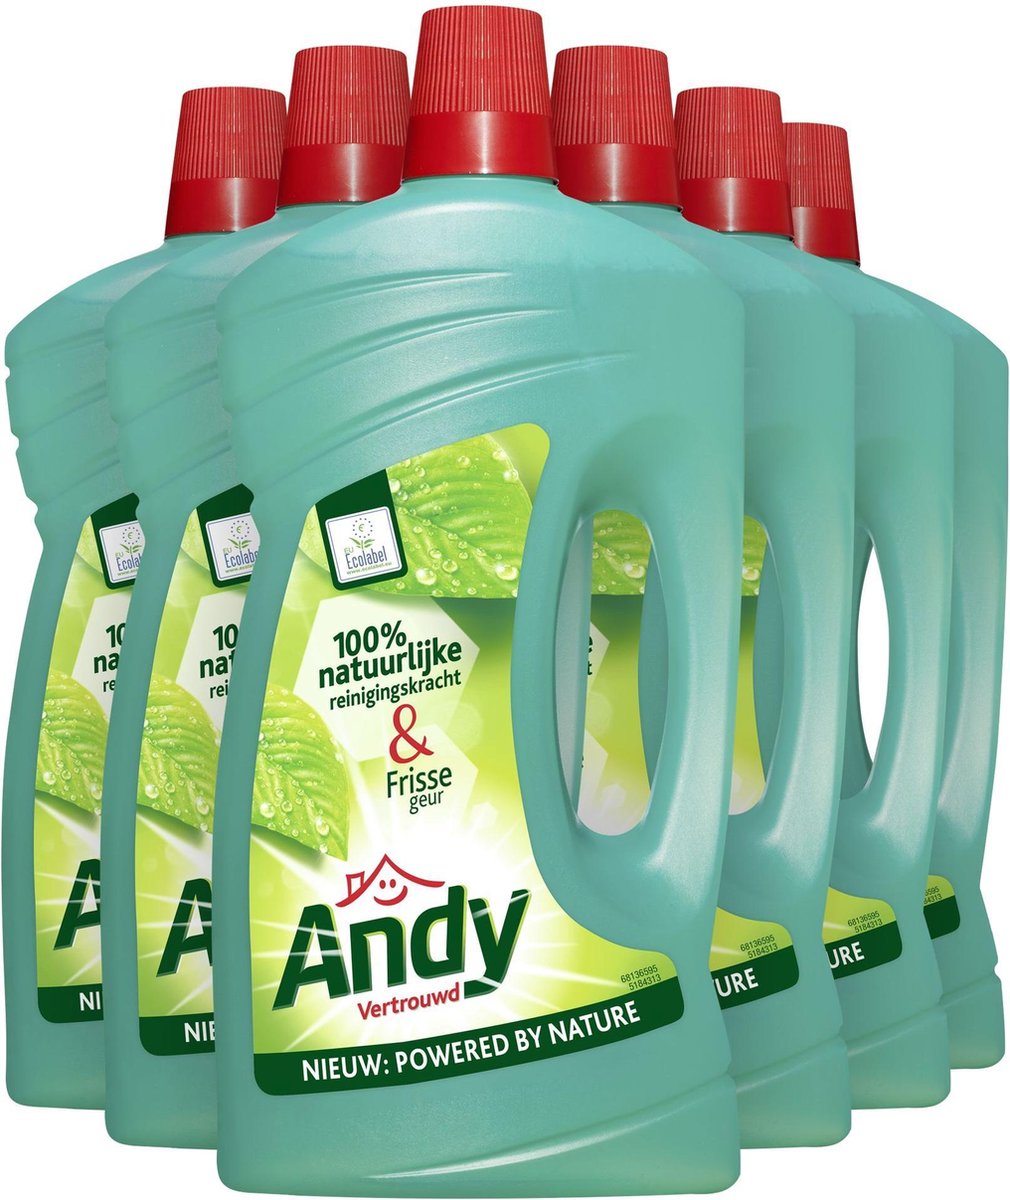 Andy Vertrouwd Allesreiniger - 6 x 1 liter - Voordeelverpakking